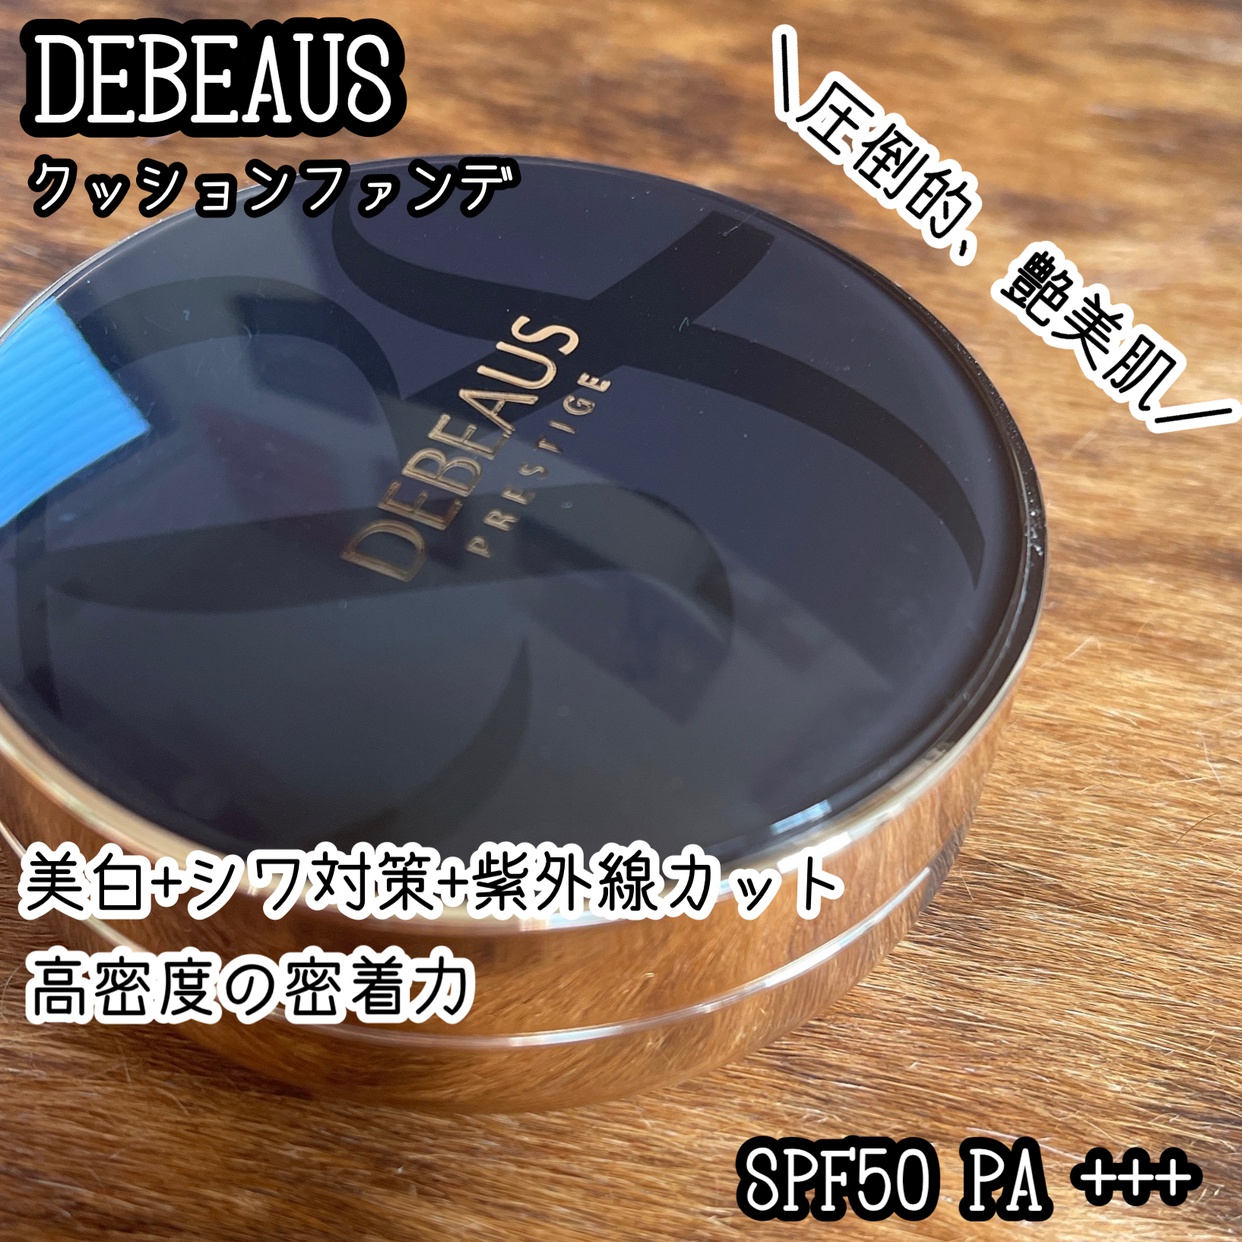 DEBEAUS(ディビュース) クッションファンデの良い点・メリットに関するchamaru222さんの口コミ画像1